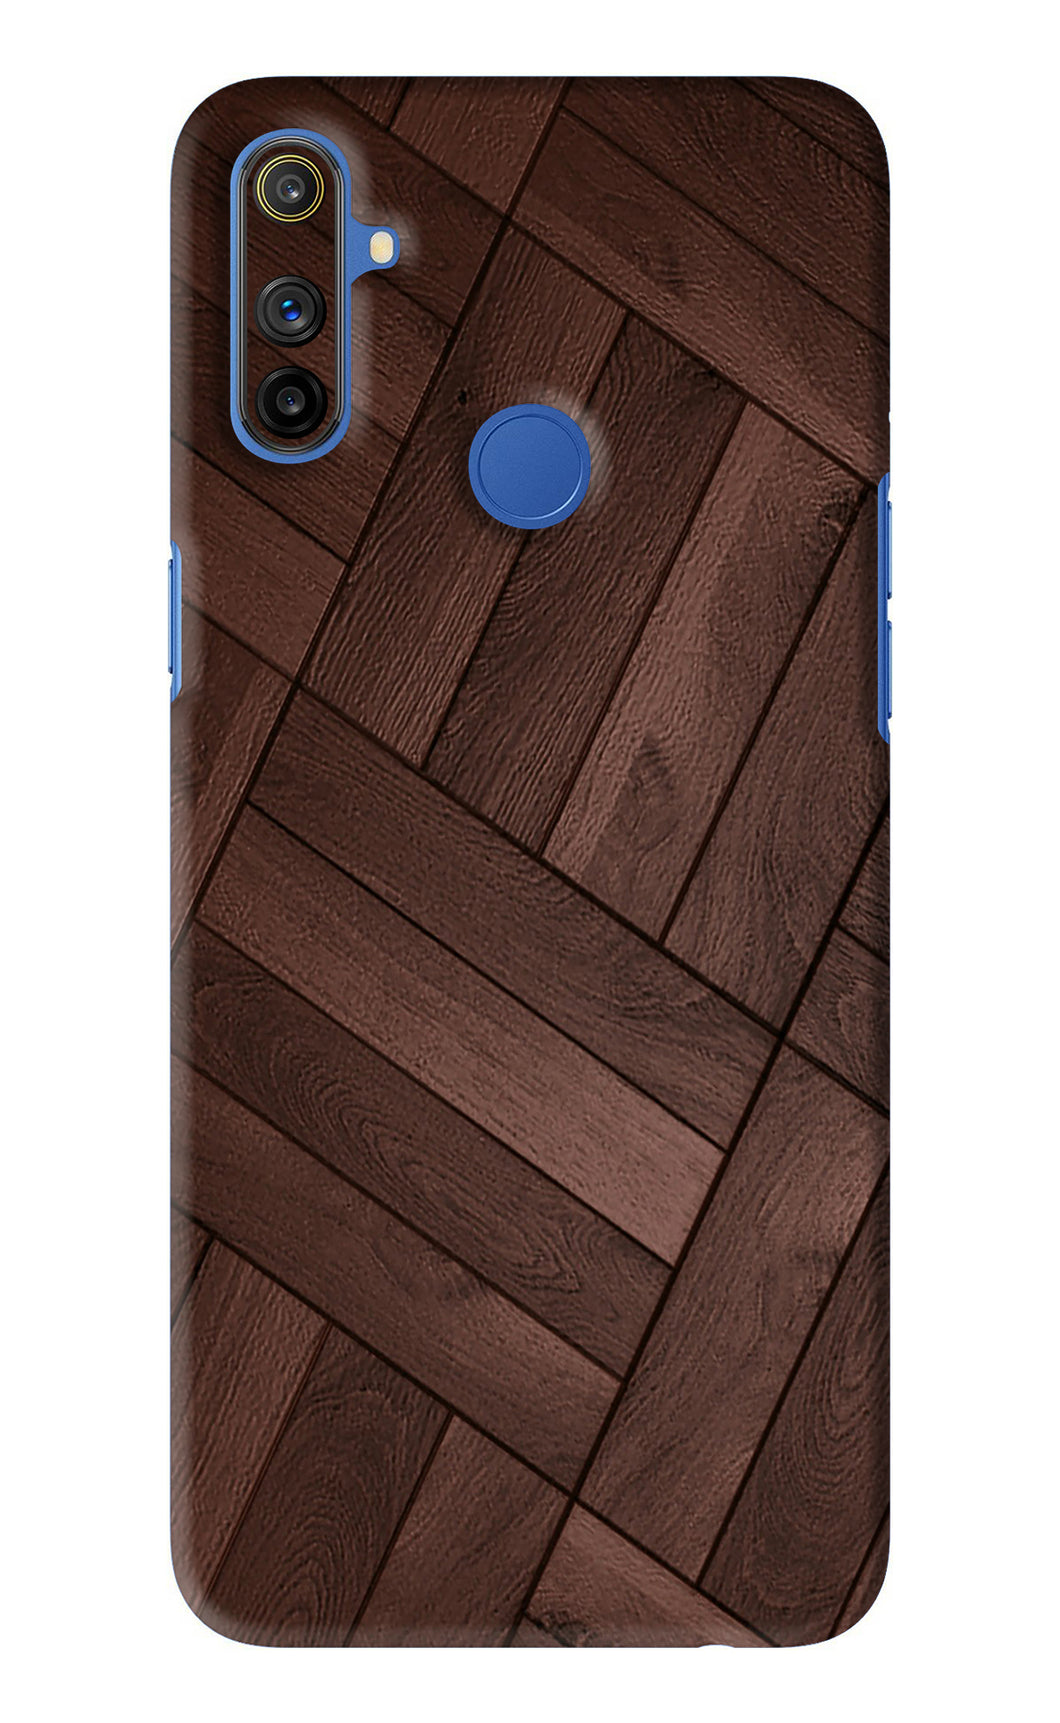 Wooden Texture Design Realme Narzo 10A Back Skin Wrap